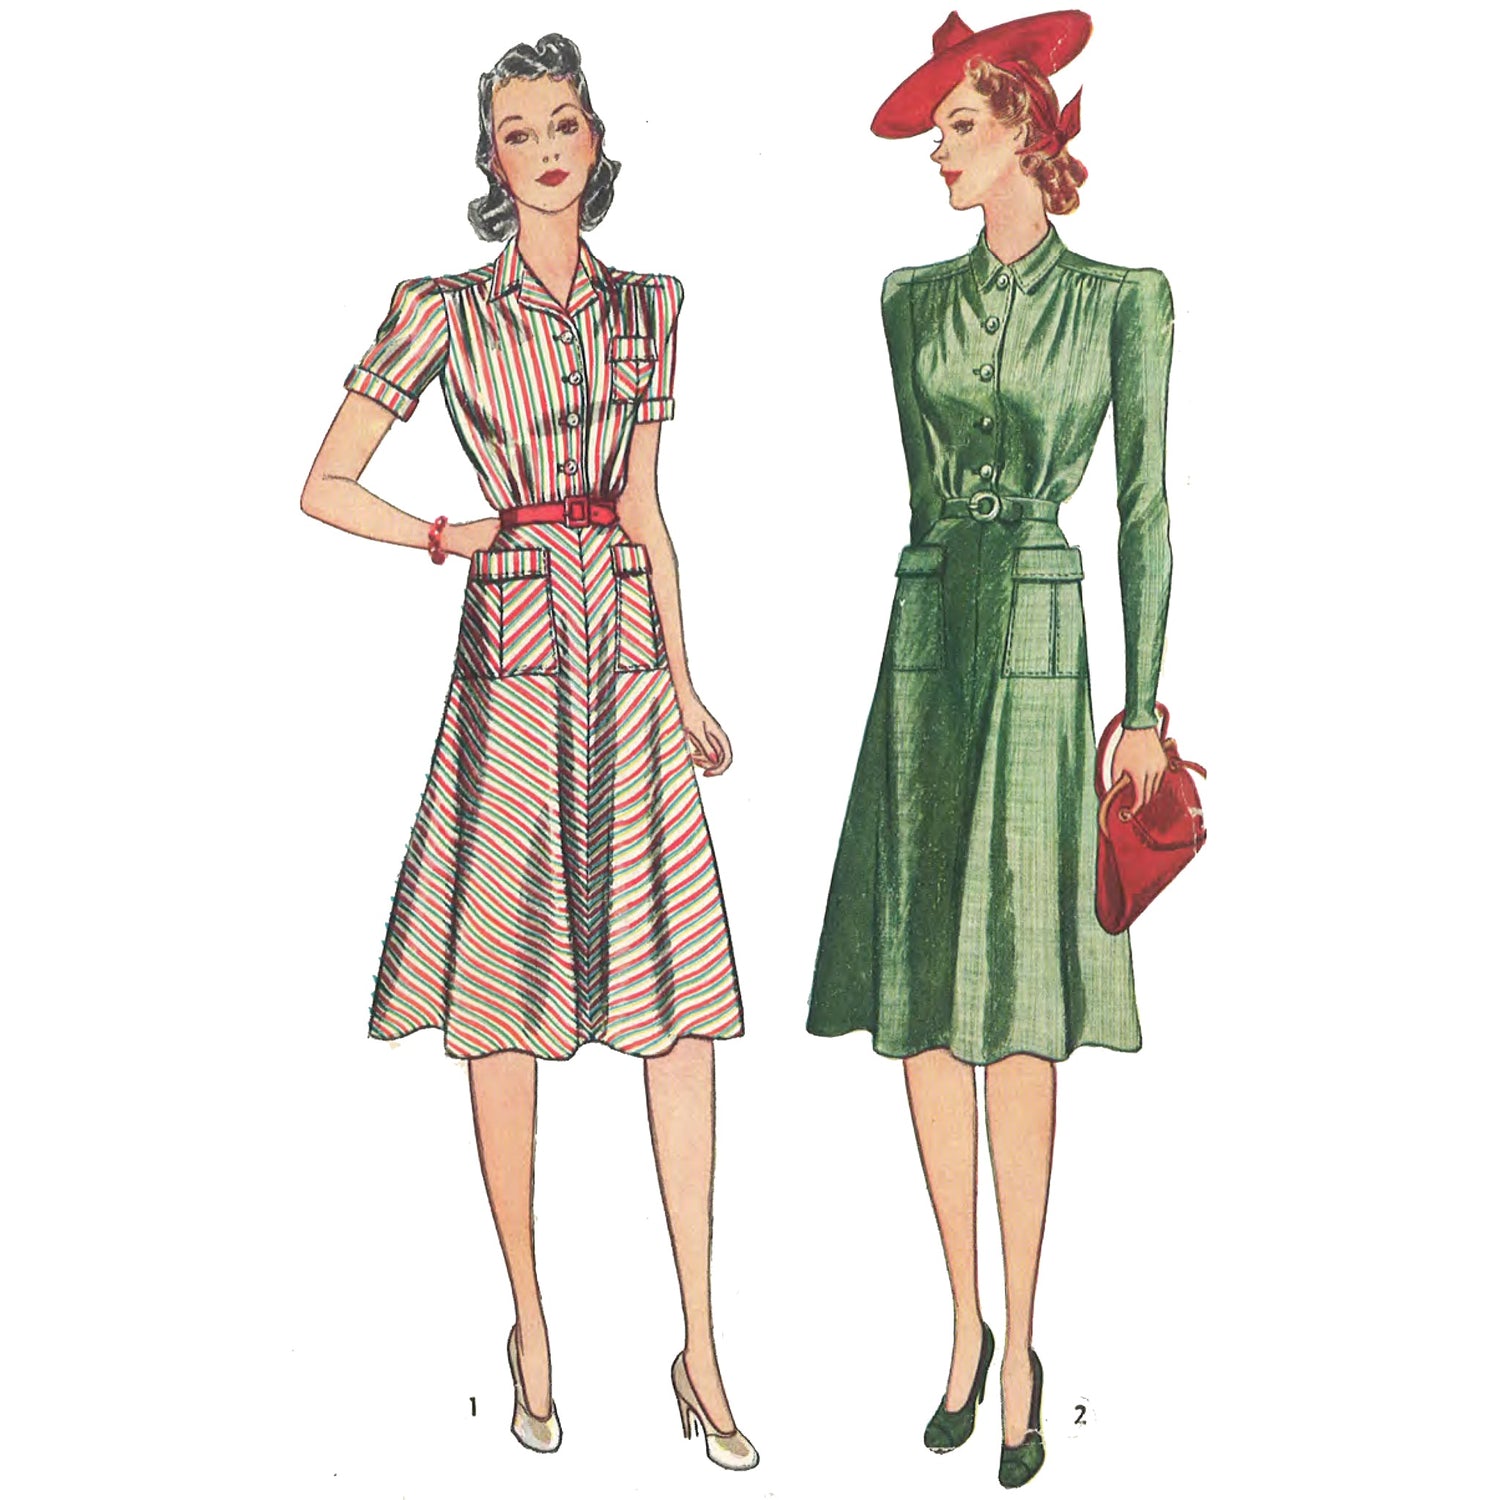 Women wearing 1940s tailored dress